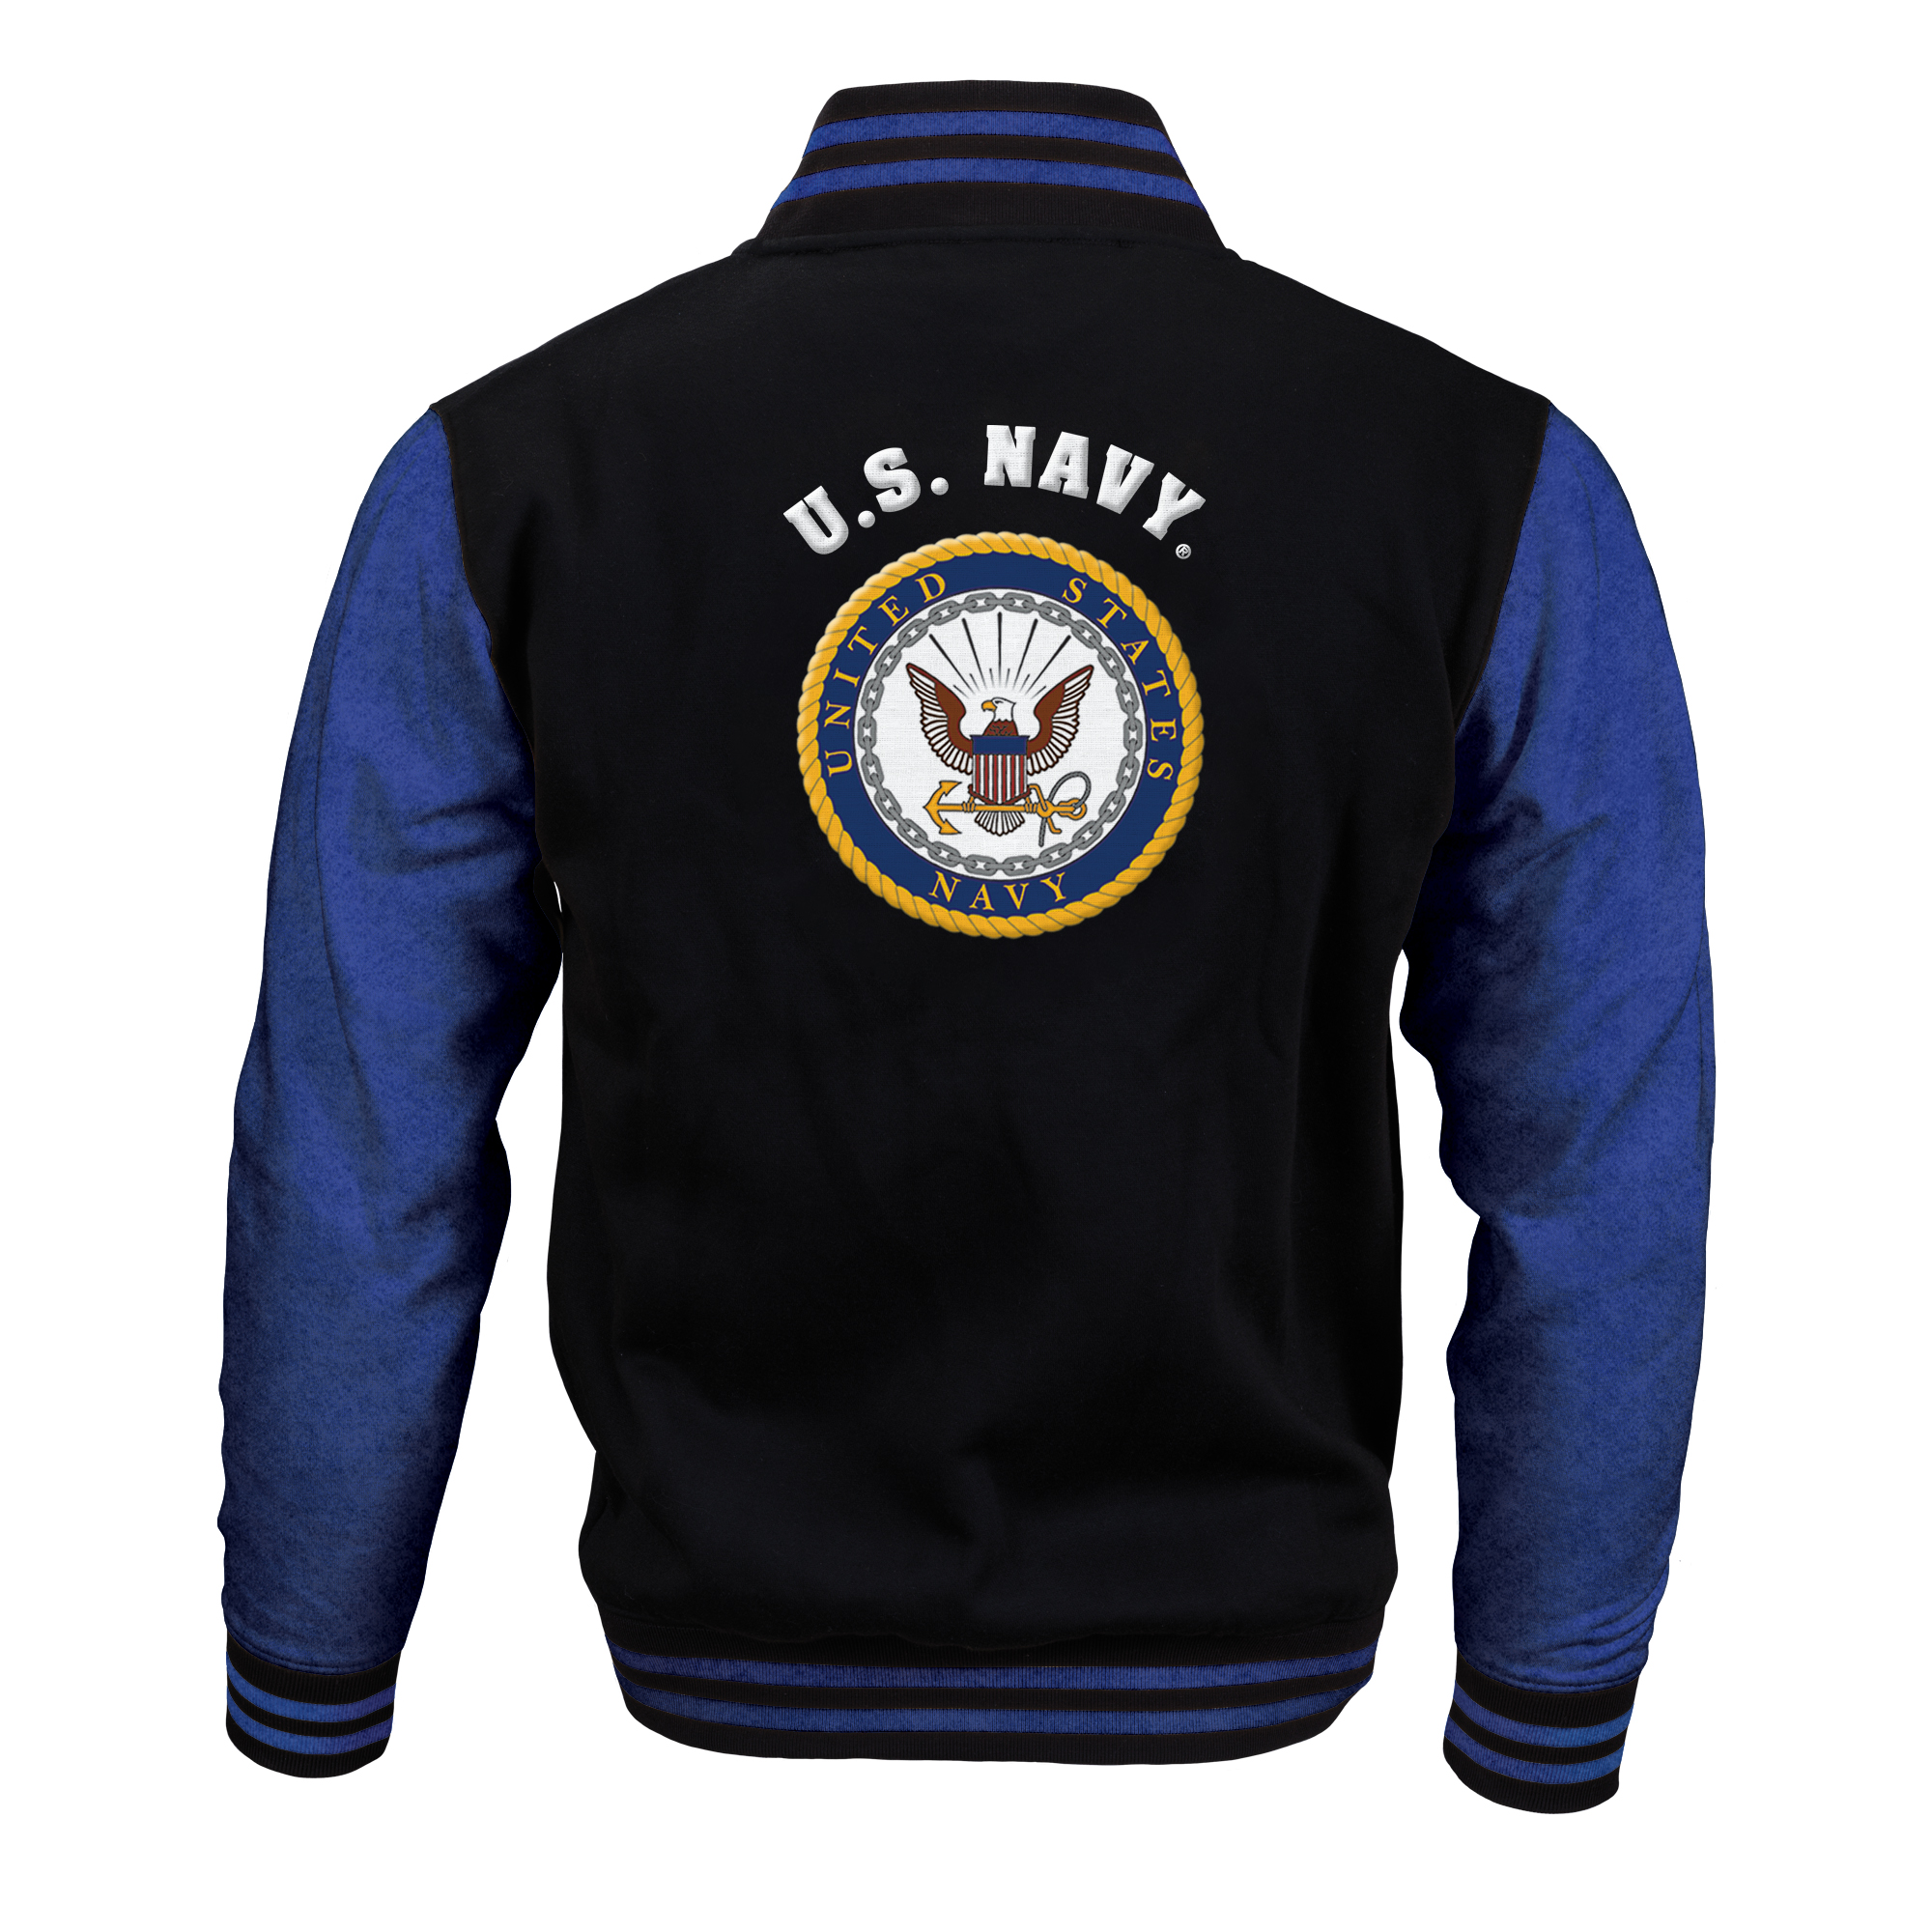 The Personalized US Navy Varsity Jacket 10263 0027 a main